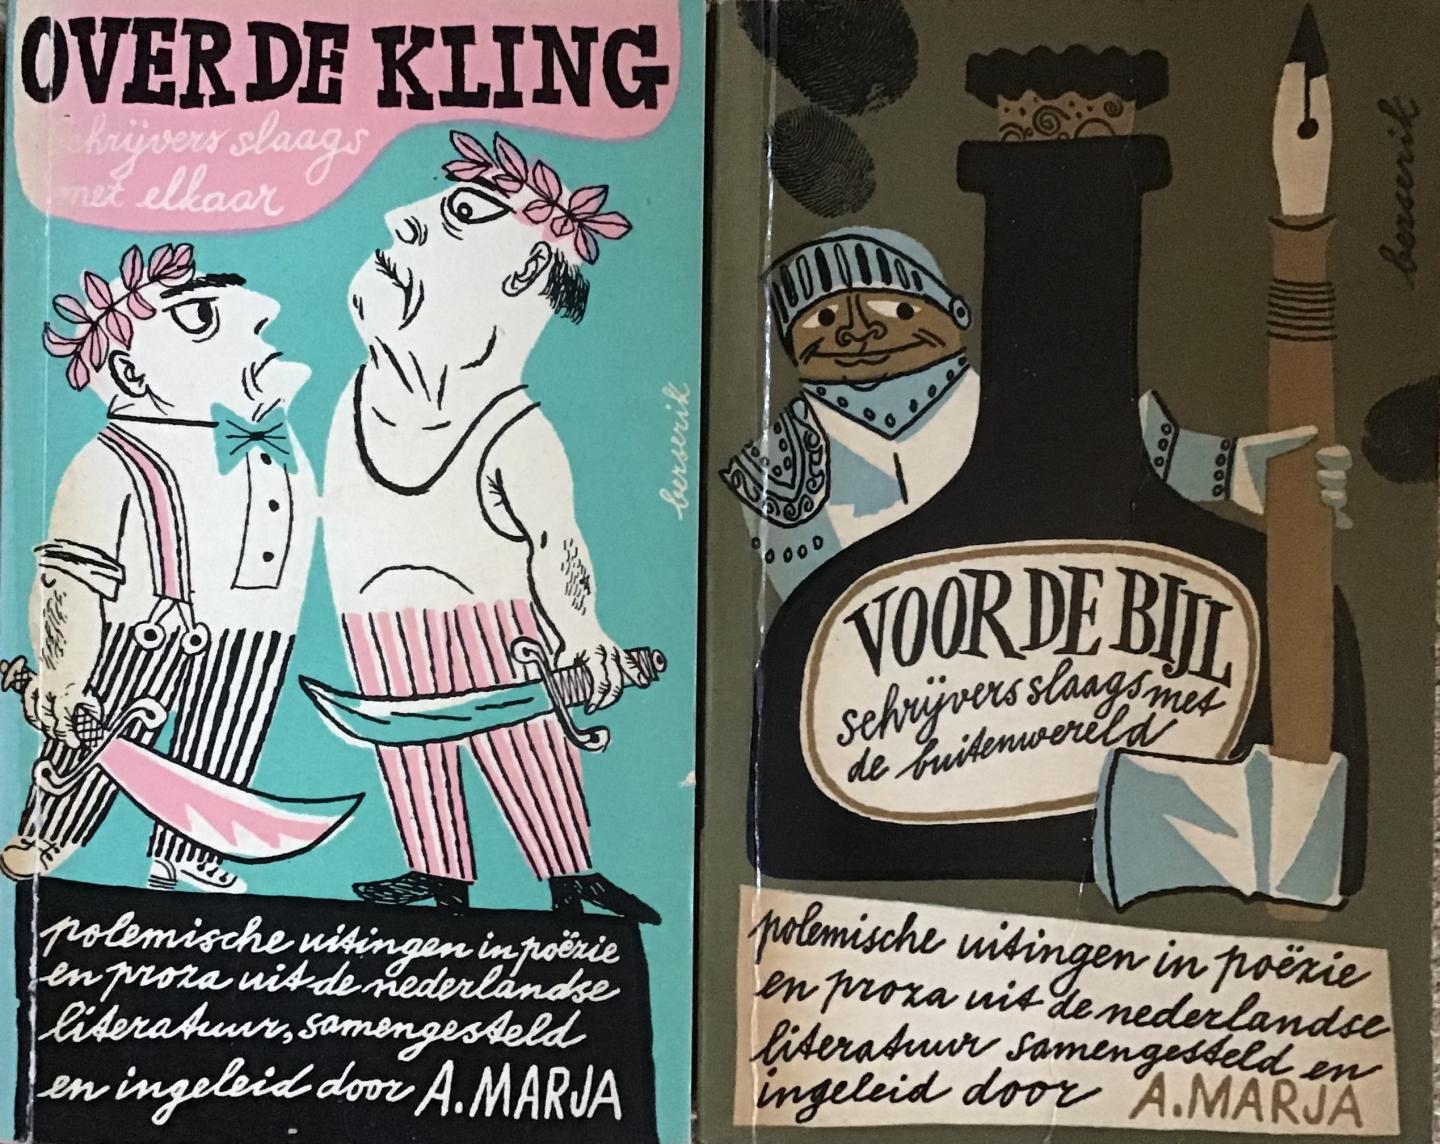 Marja , Samengesteld en ingeleid door A. - Voor de Bijl & Over de Kling - Polemische uitingen in poëzie en proza uit de nederlandse literatuur